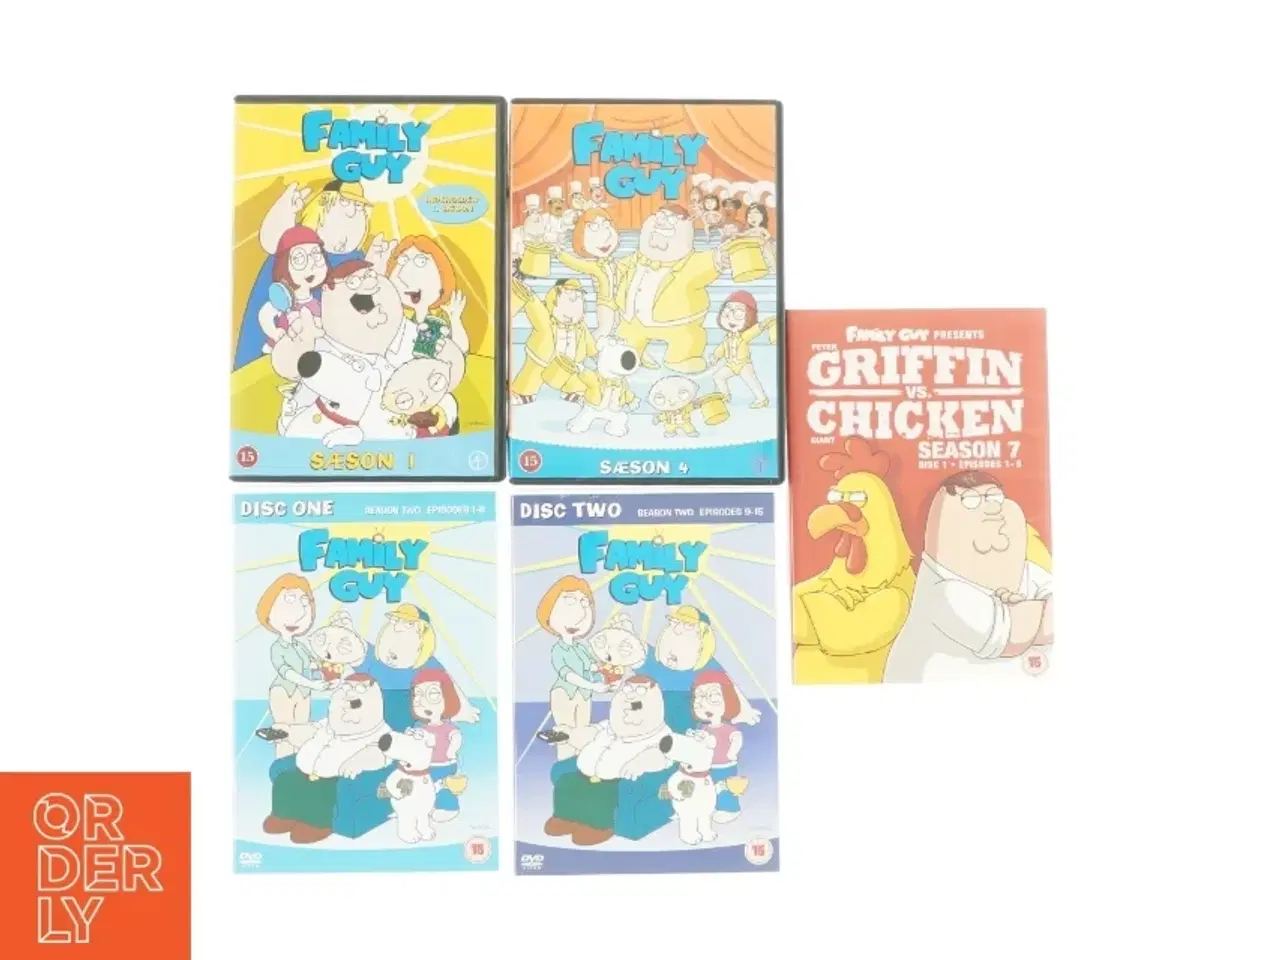 Billede 1 - Forskellige sæsoner af Family Guy (5 stk)(DVD)